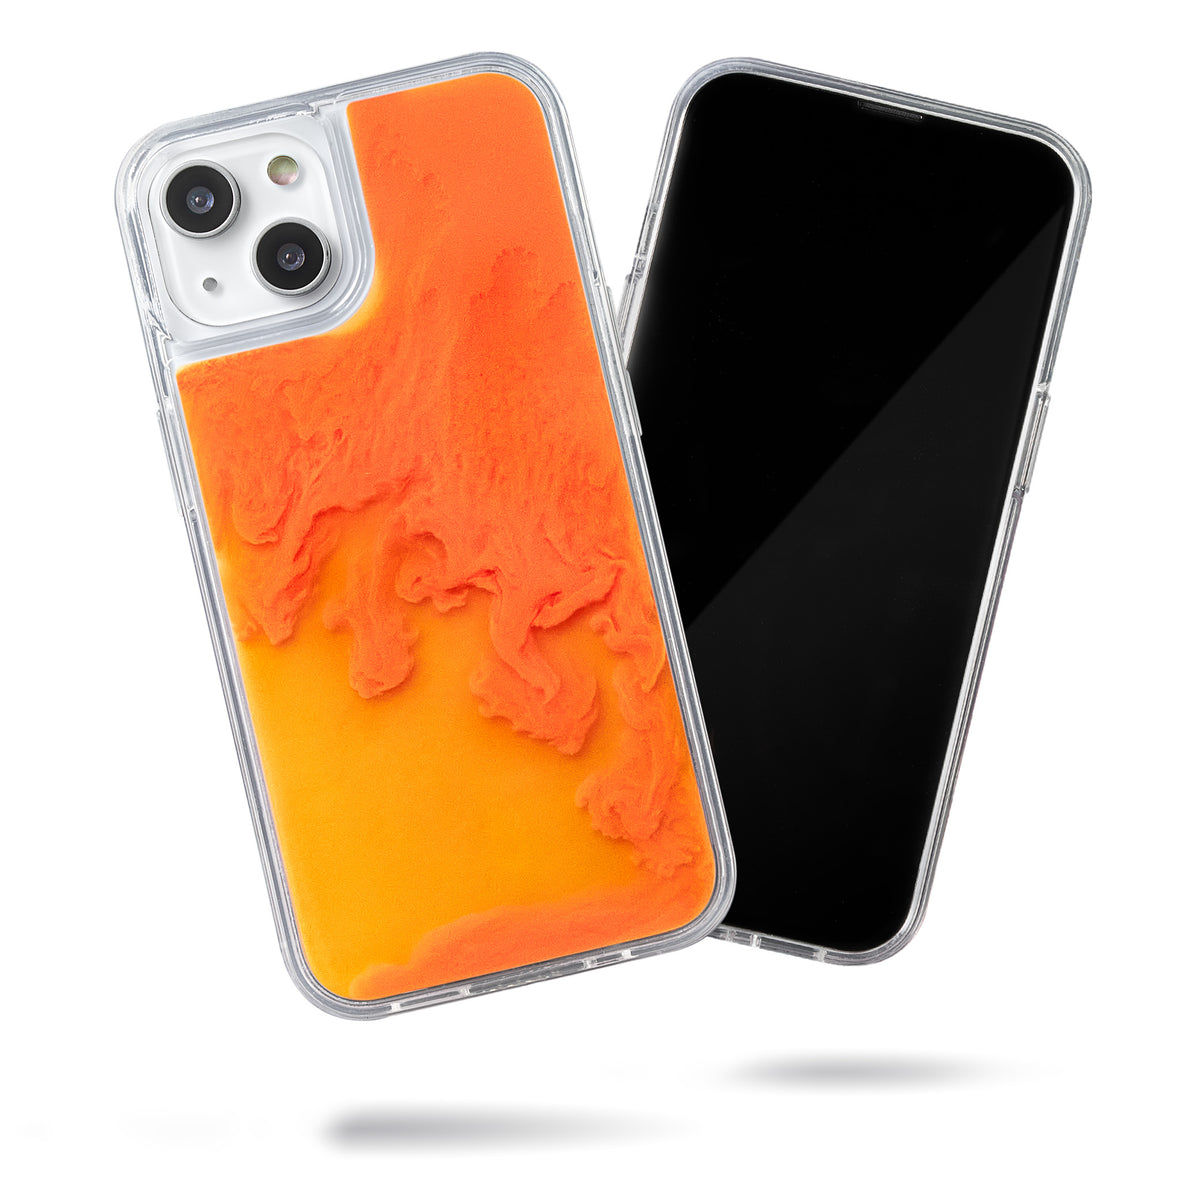 【即納出荷】NEO SAND CASE (SEA) ORANGE (AC-37) オレンジ iPhoneケース